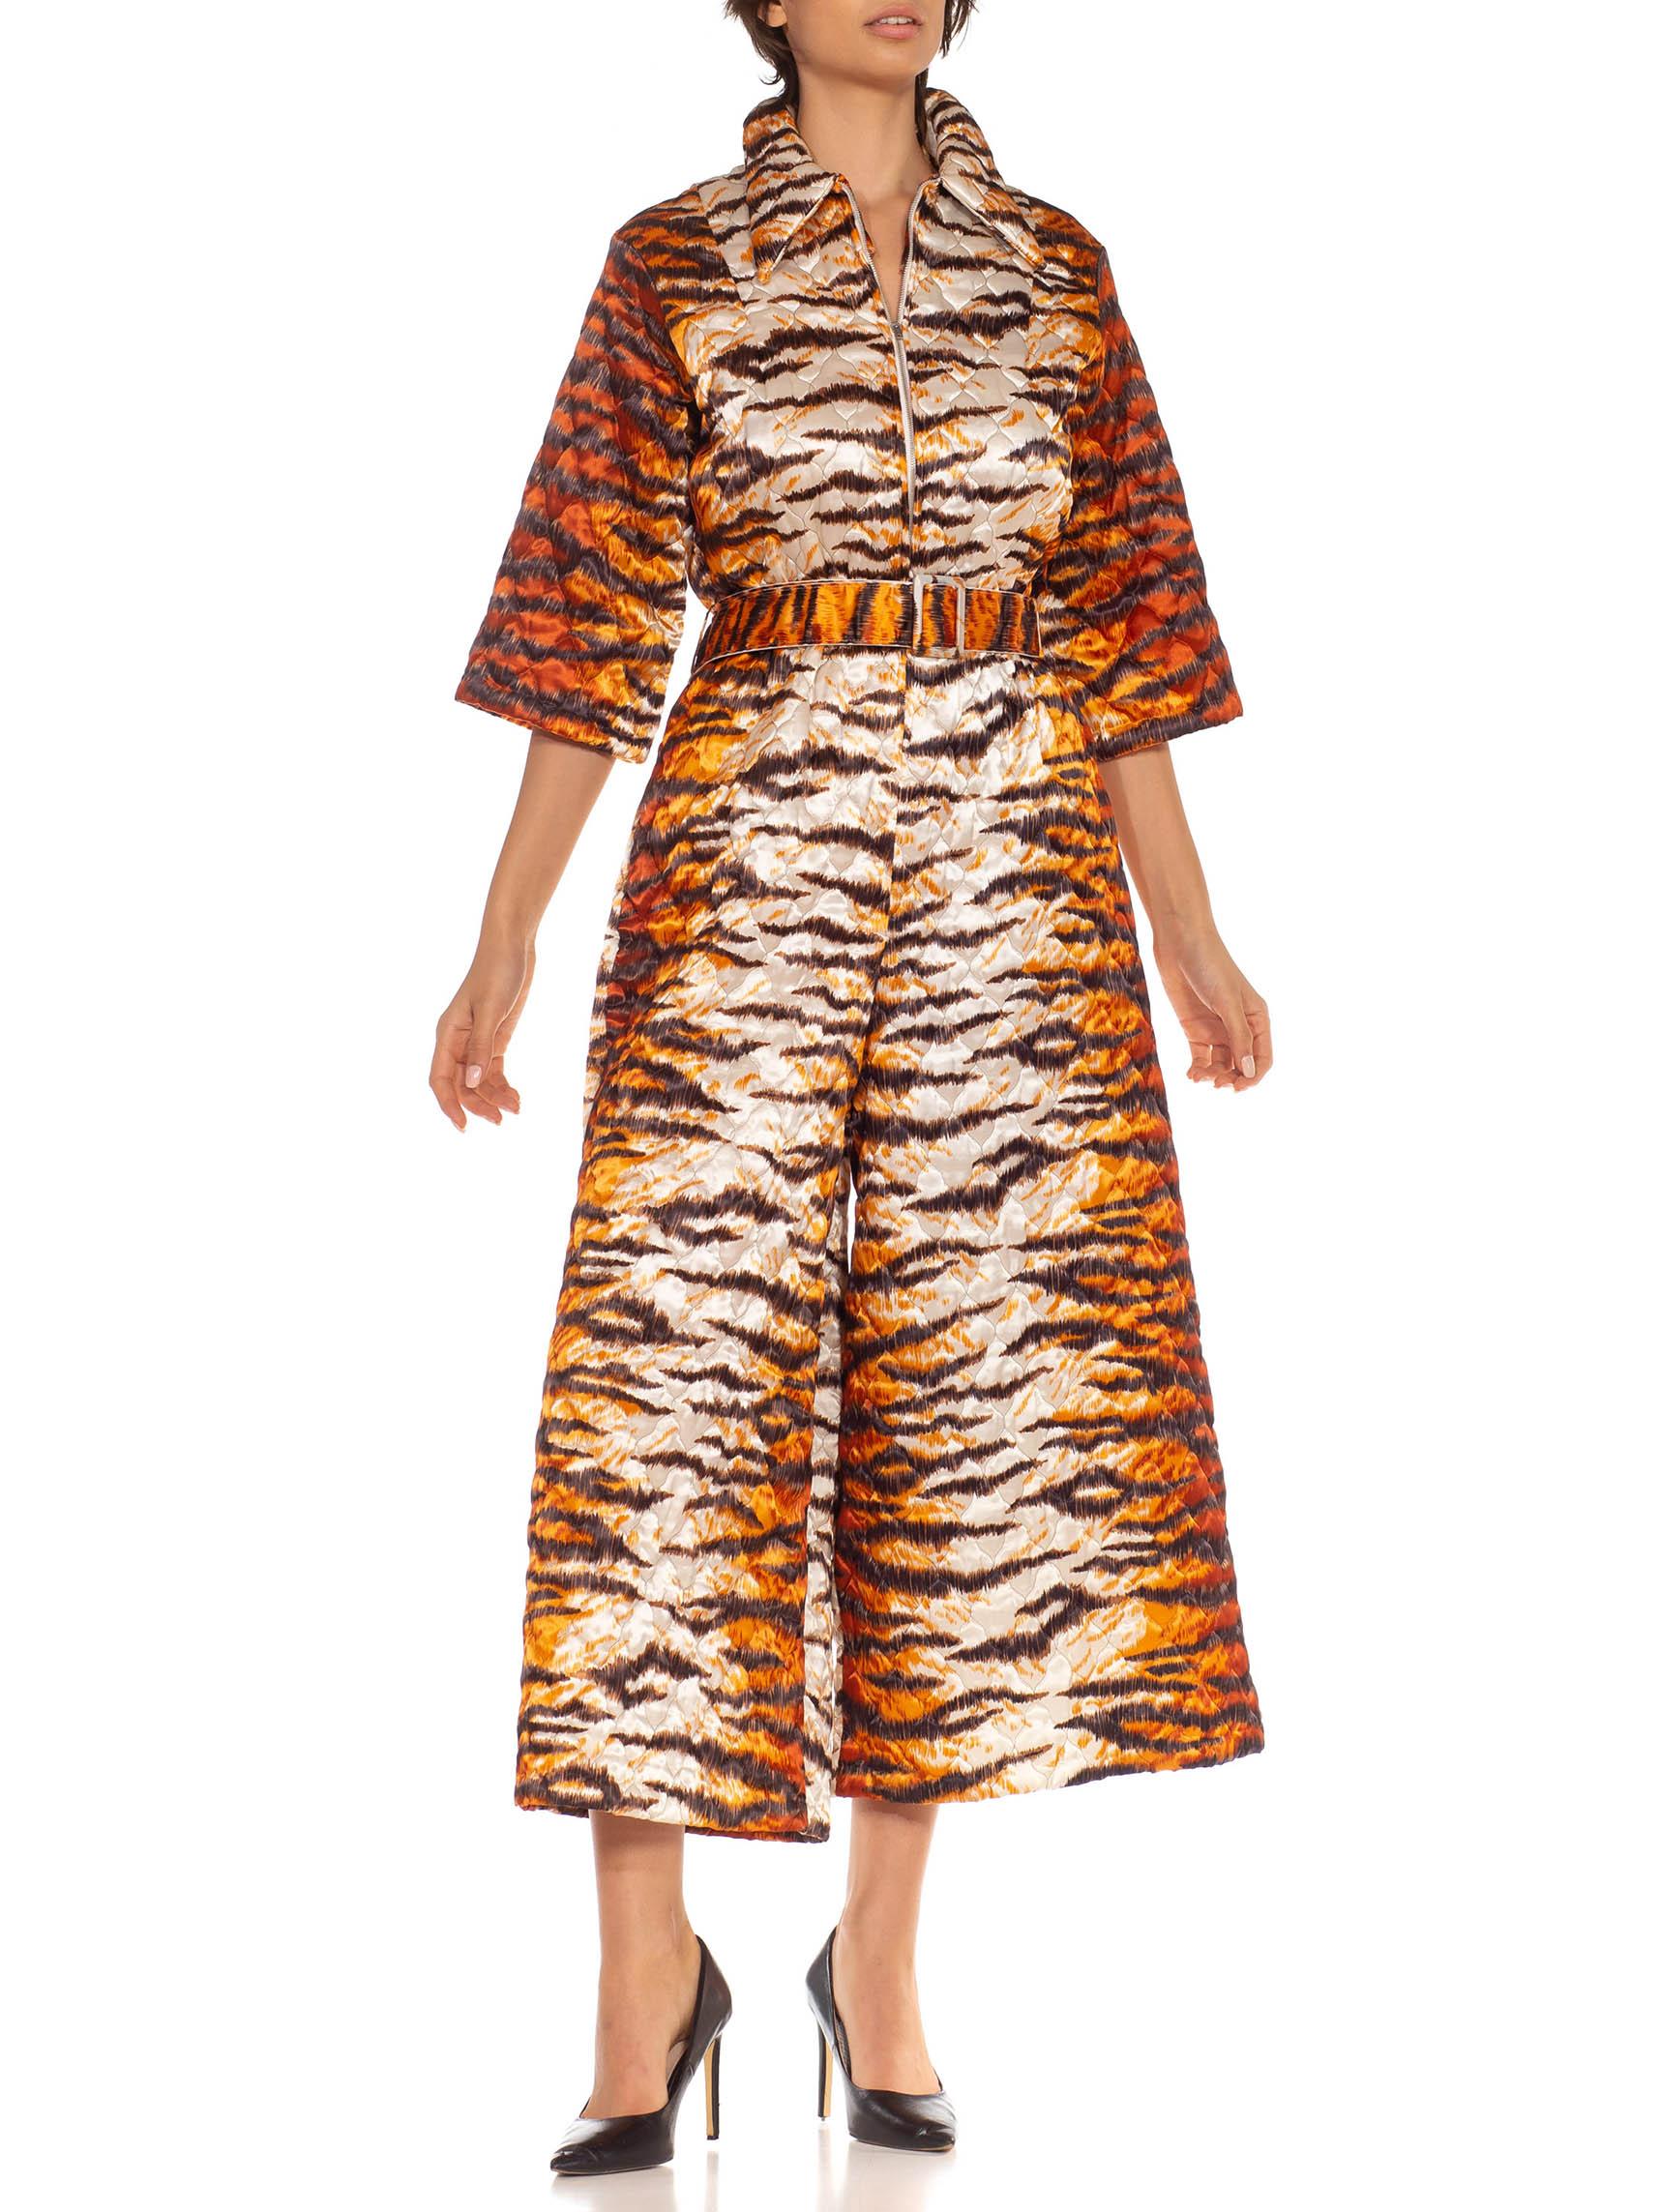 Combinaison matelassée en polyester mélangé imprimé tigre orange et blanc des années 1970 Excellent état - En vente à New York, NY